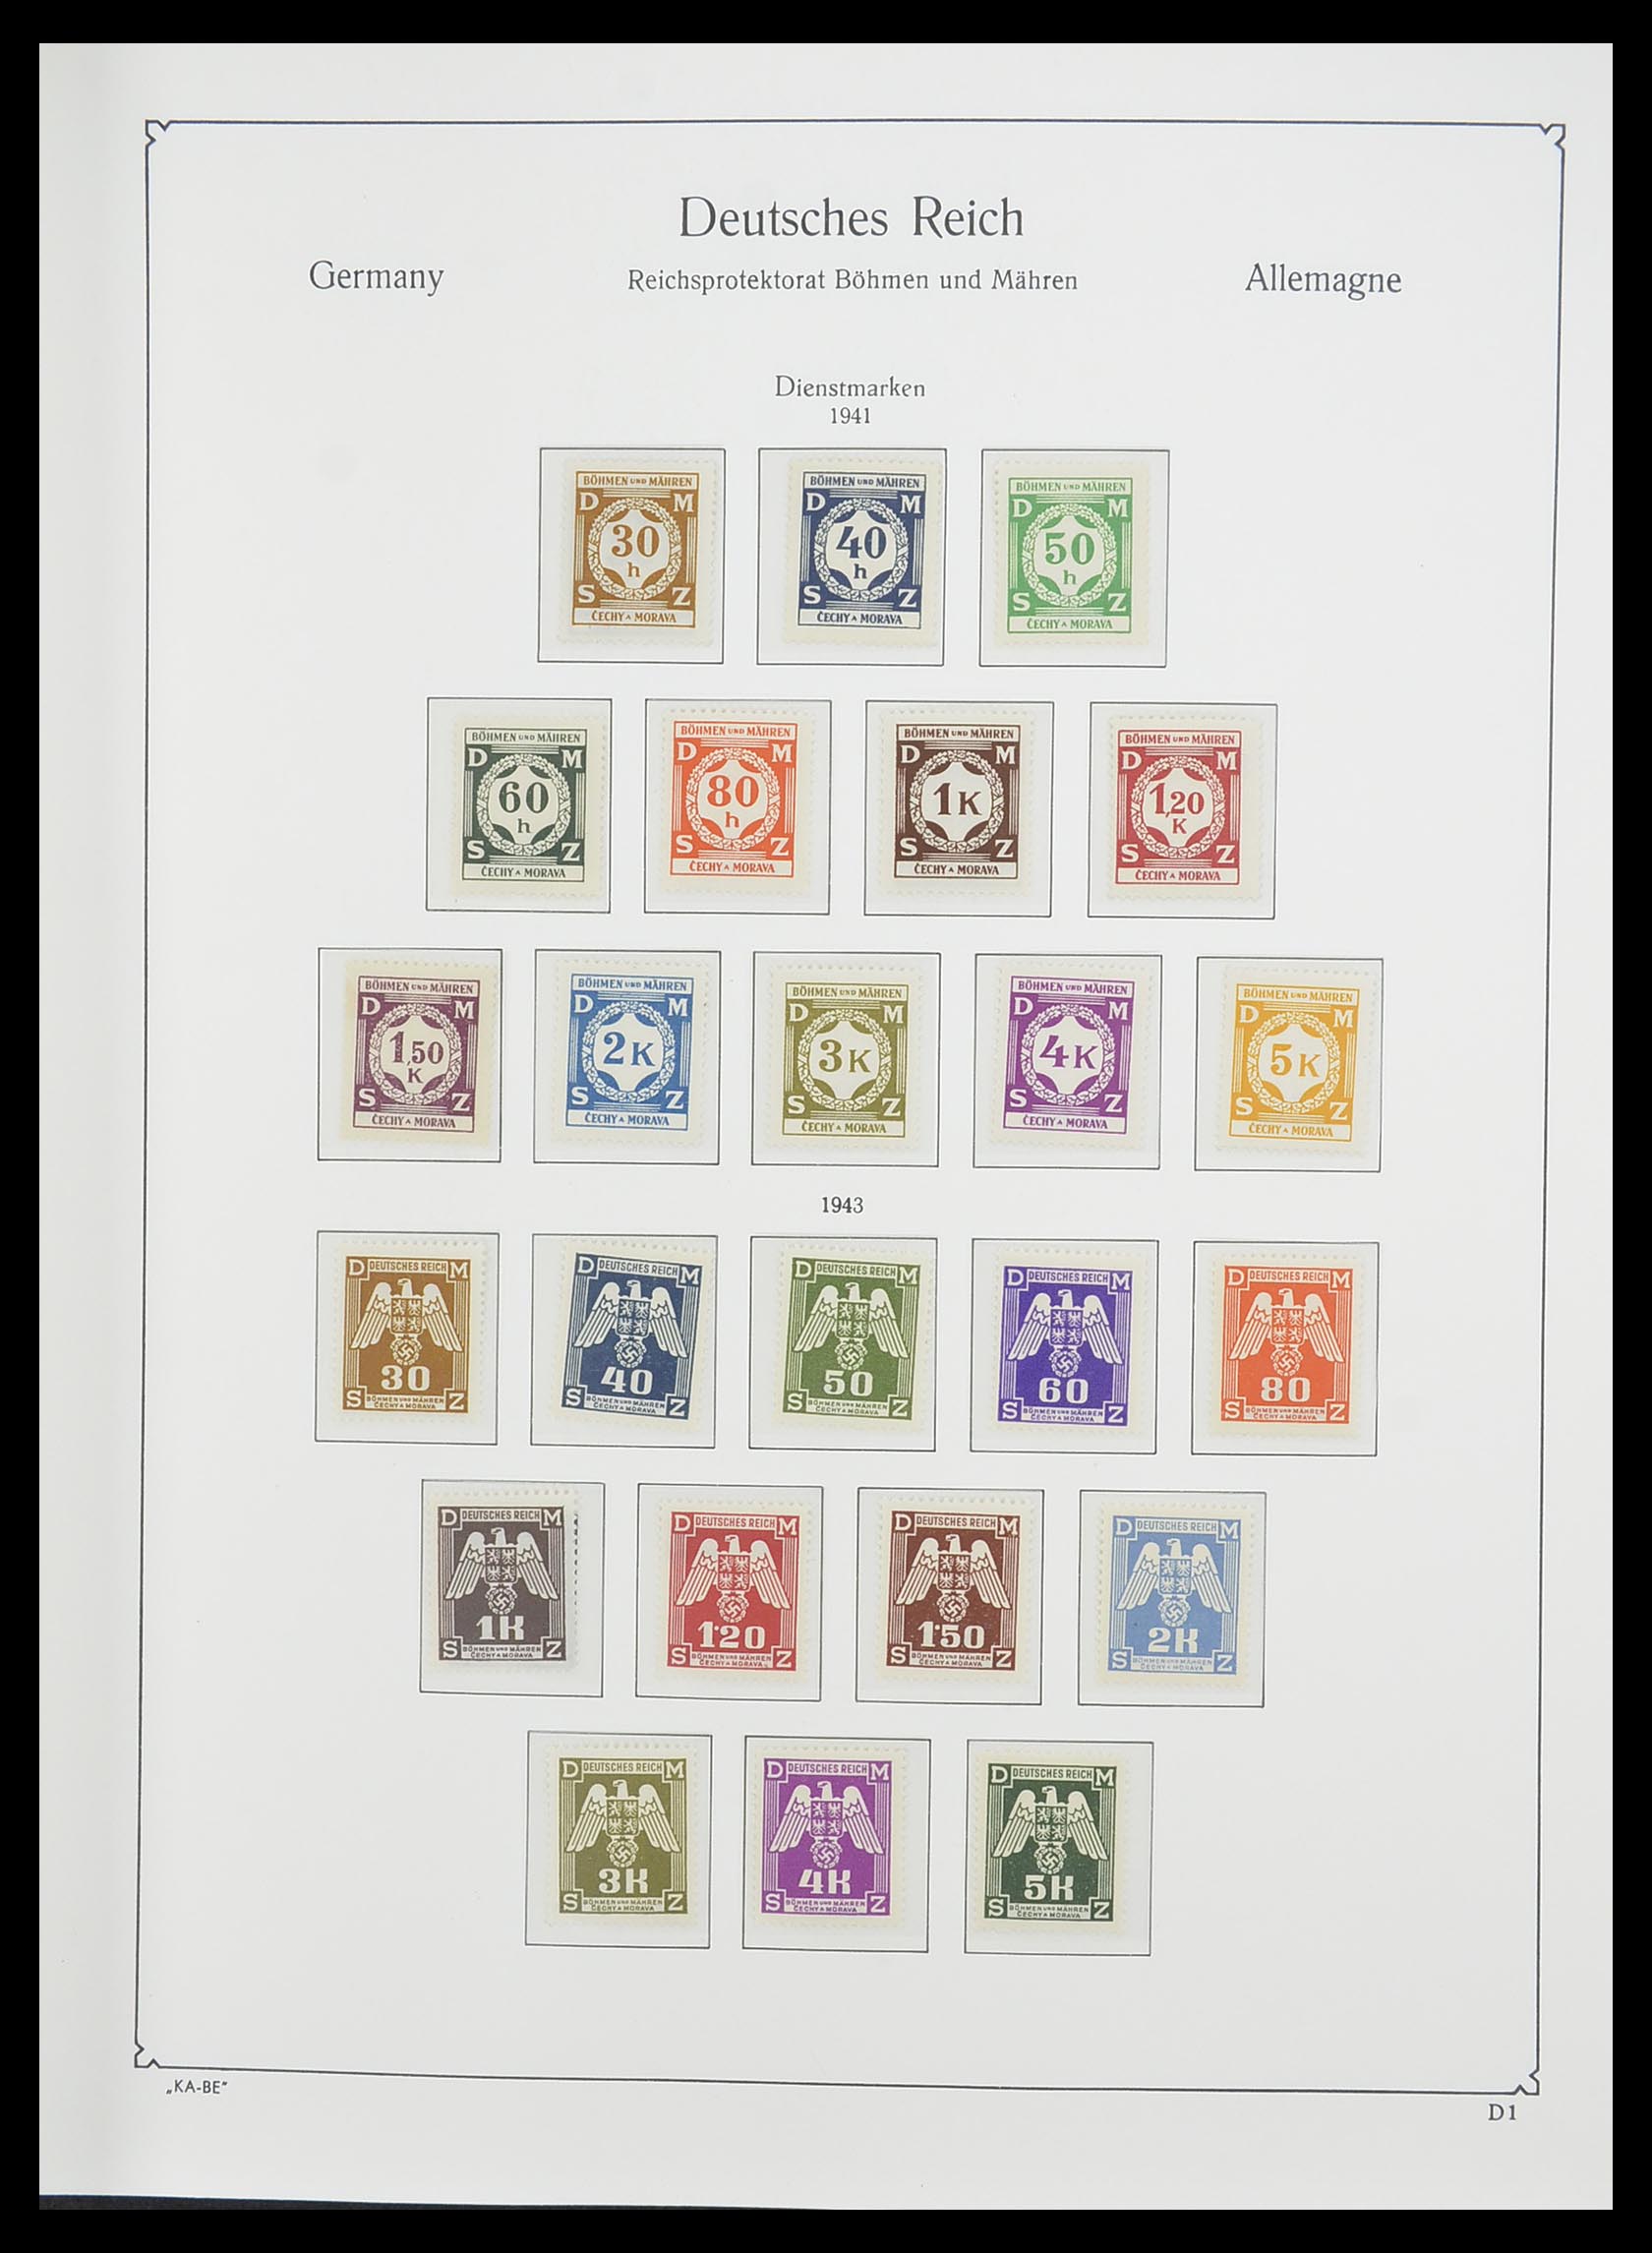 33360 017 - Stamp collection 33360 German occupation 2nd world war 1939-1945.